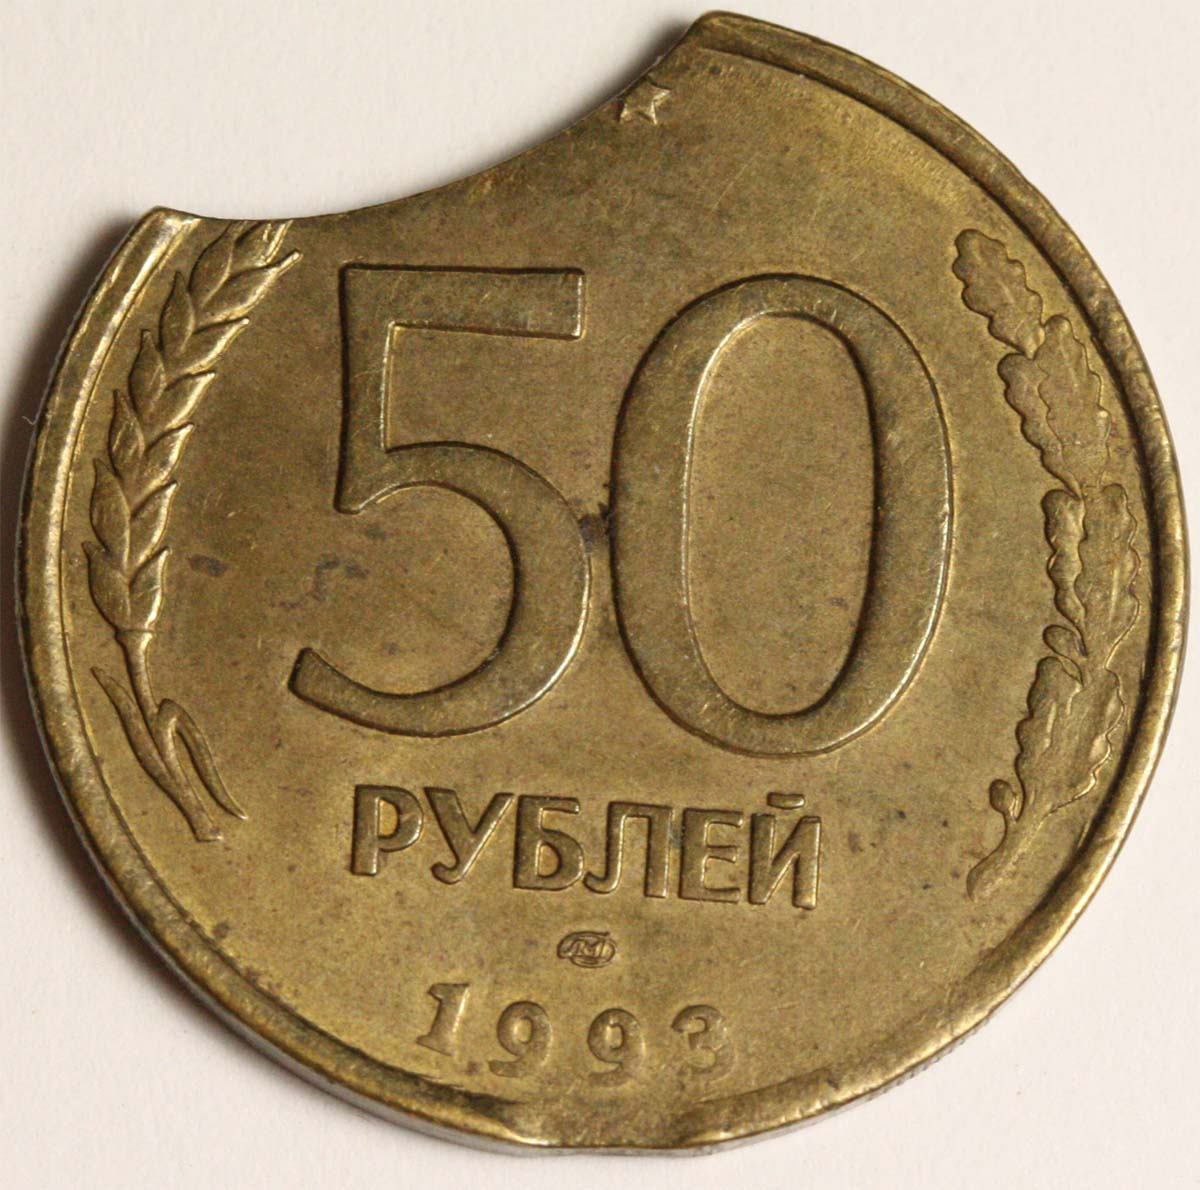 Сколько стоят пятьдесят рублей